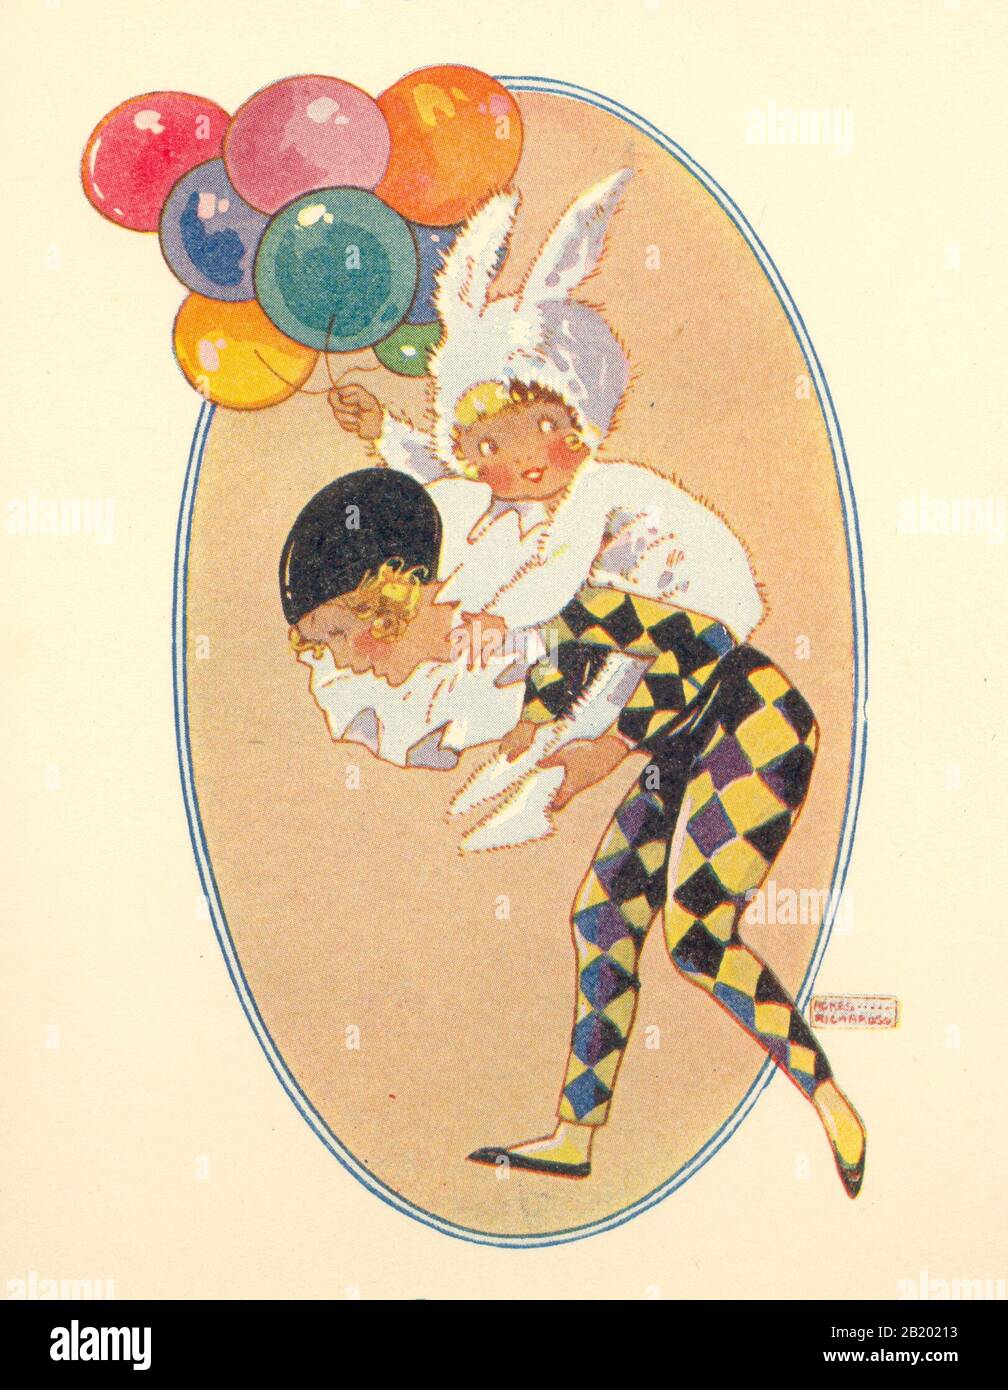 Deux enfants en costume fantaisie jouant à la piquante à une fête de l'artiste Agnes Richardson vers 1930 Banque D'Images